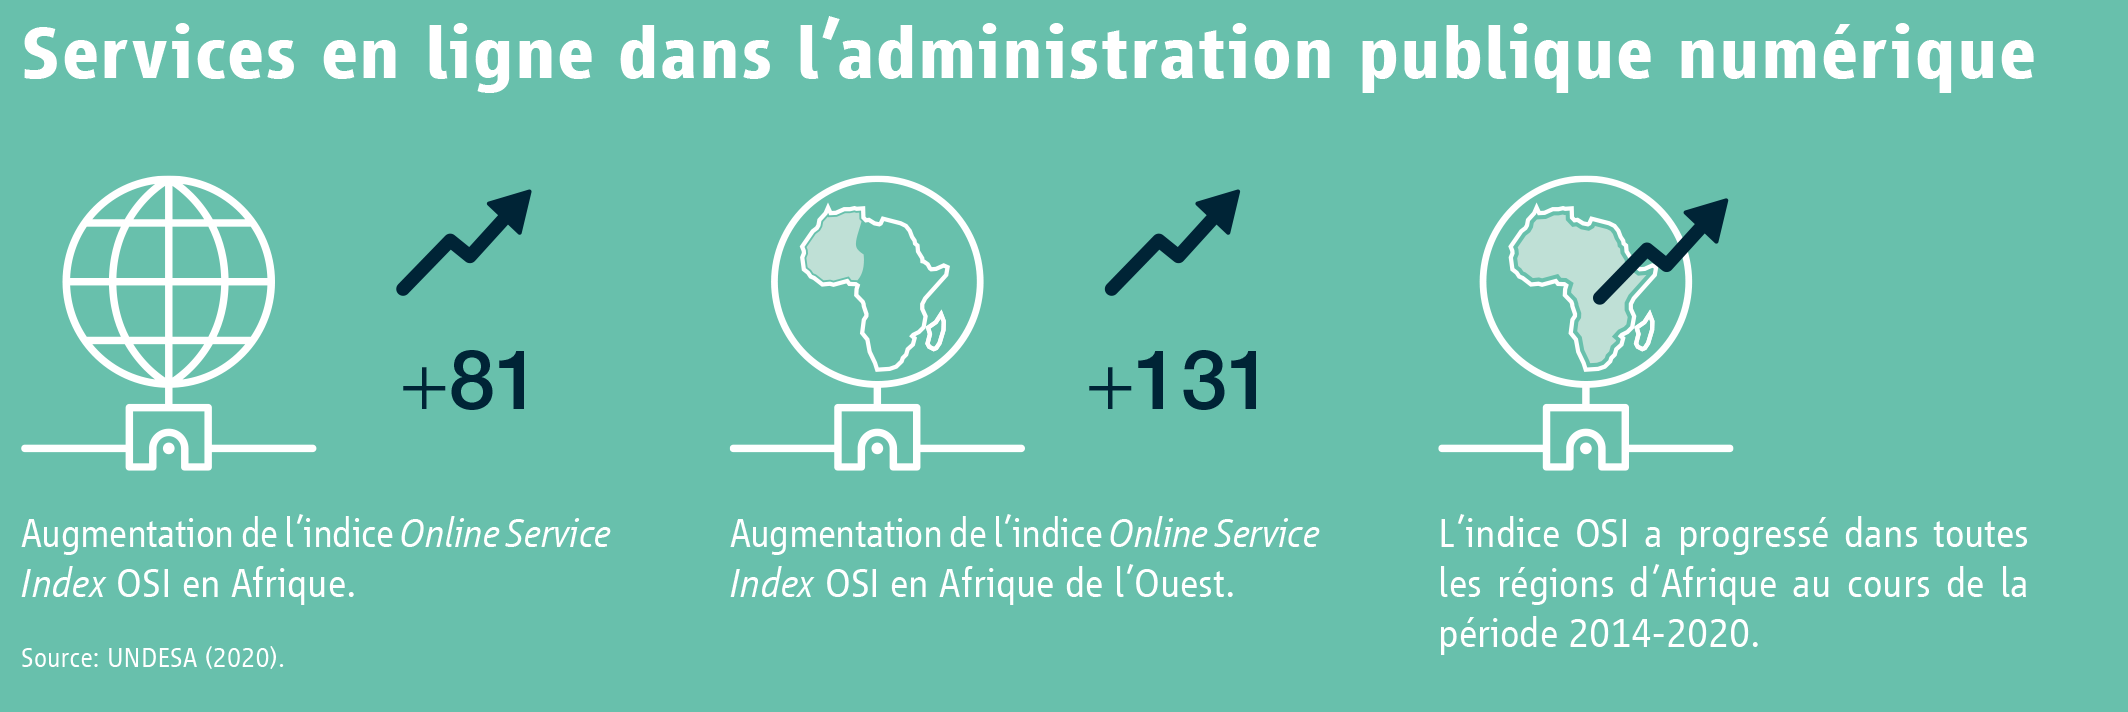 Services en ligne dans l’administration publique numérique